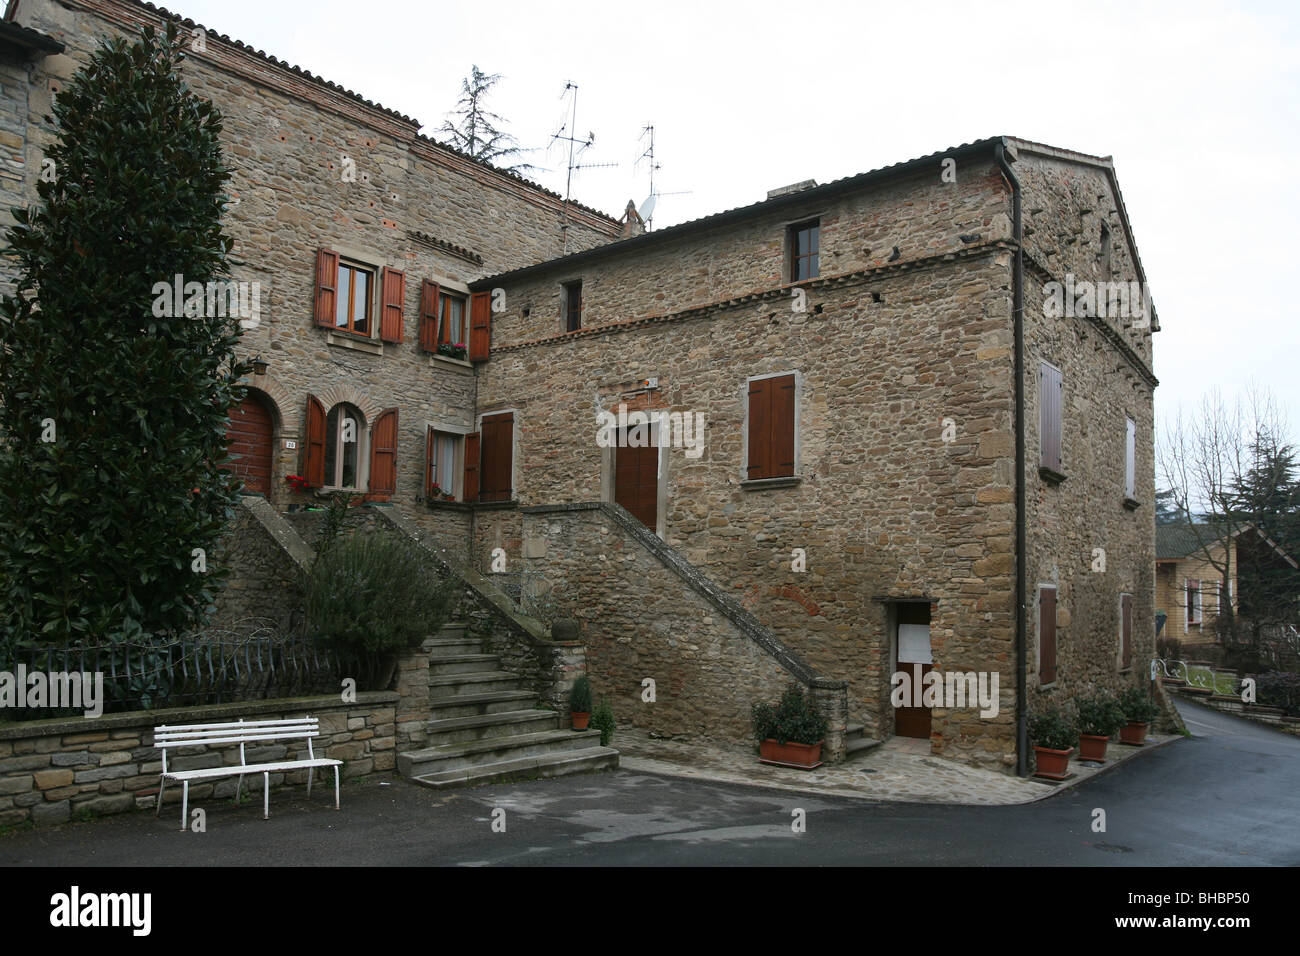 Italy, Emilia Romagna, Predappio, birthplace of Benito Mussolini was born July 29, 1883 Stock Photo